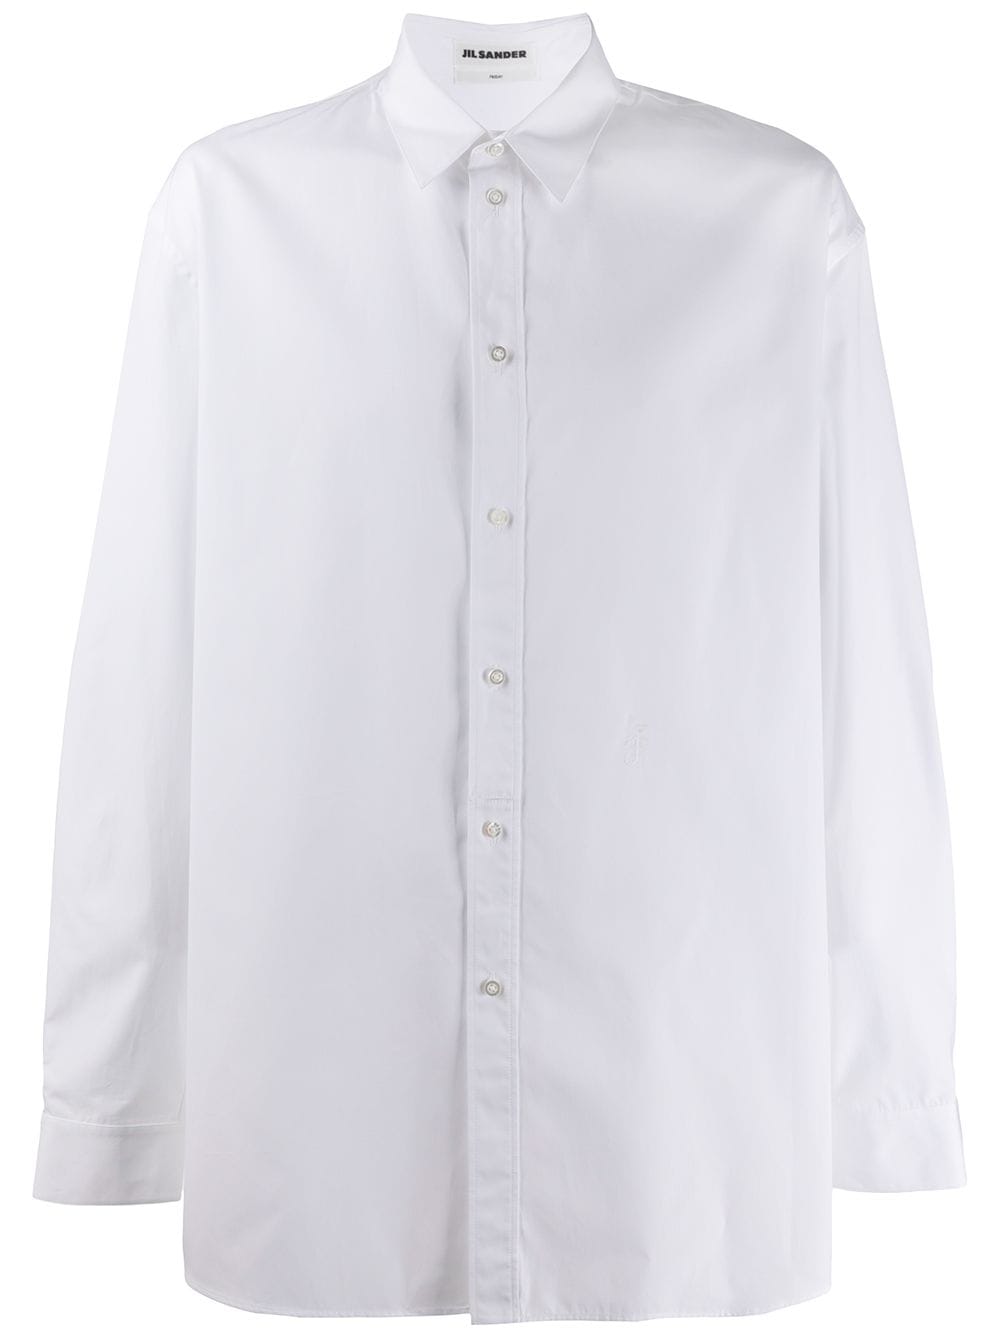 Jil Sander button up shirt - White von Jil Sander